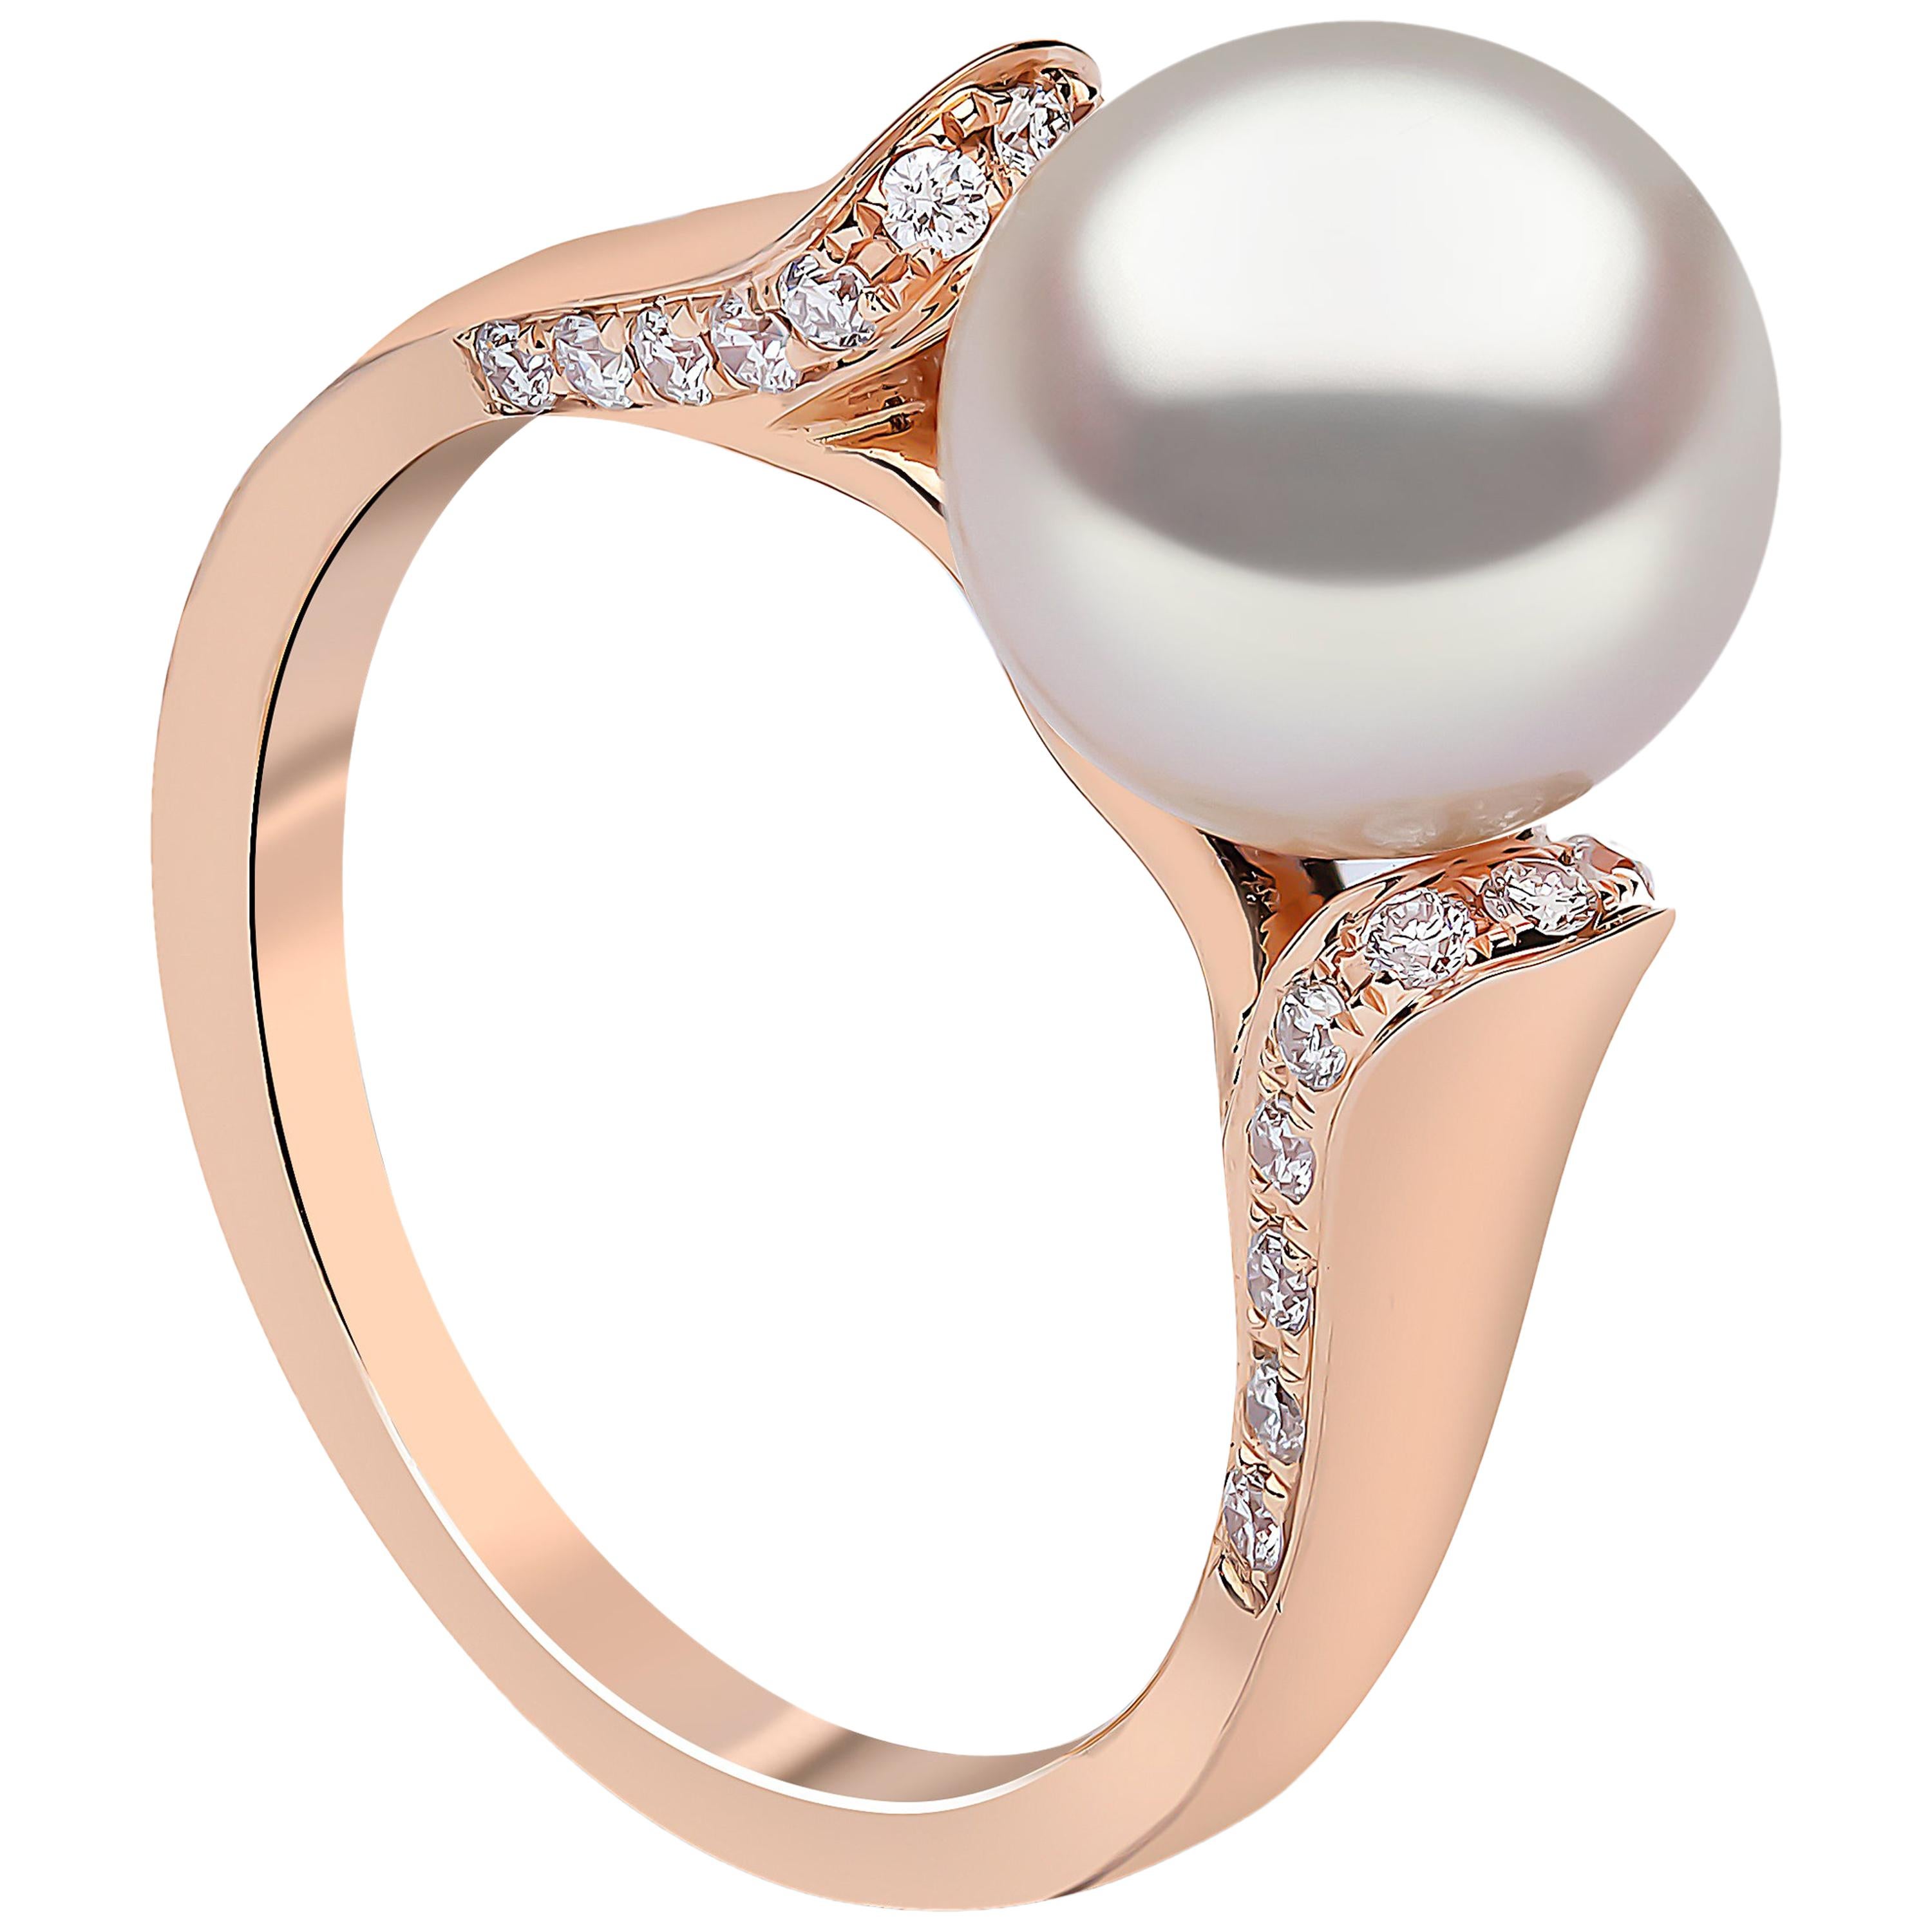 Yoko London Freshwater Pearl and Diamond Ring in 18 Karat Rose Gold